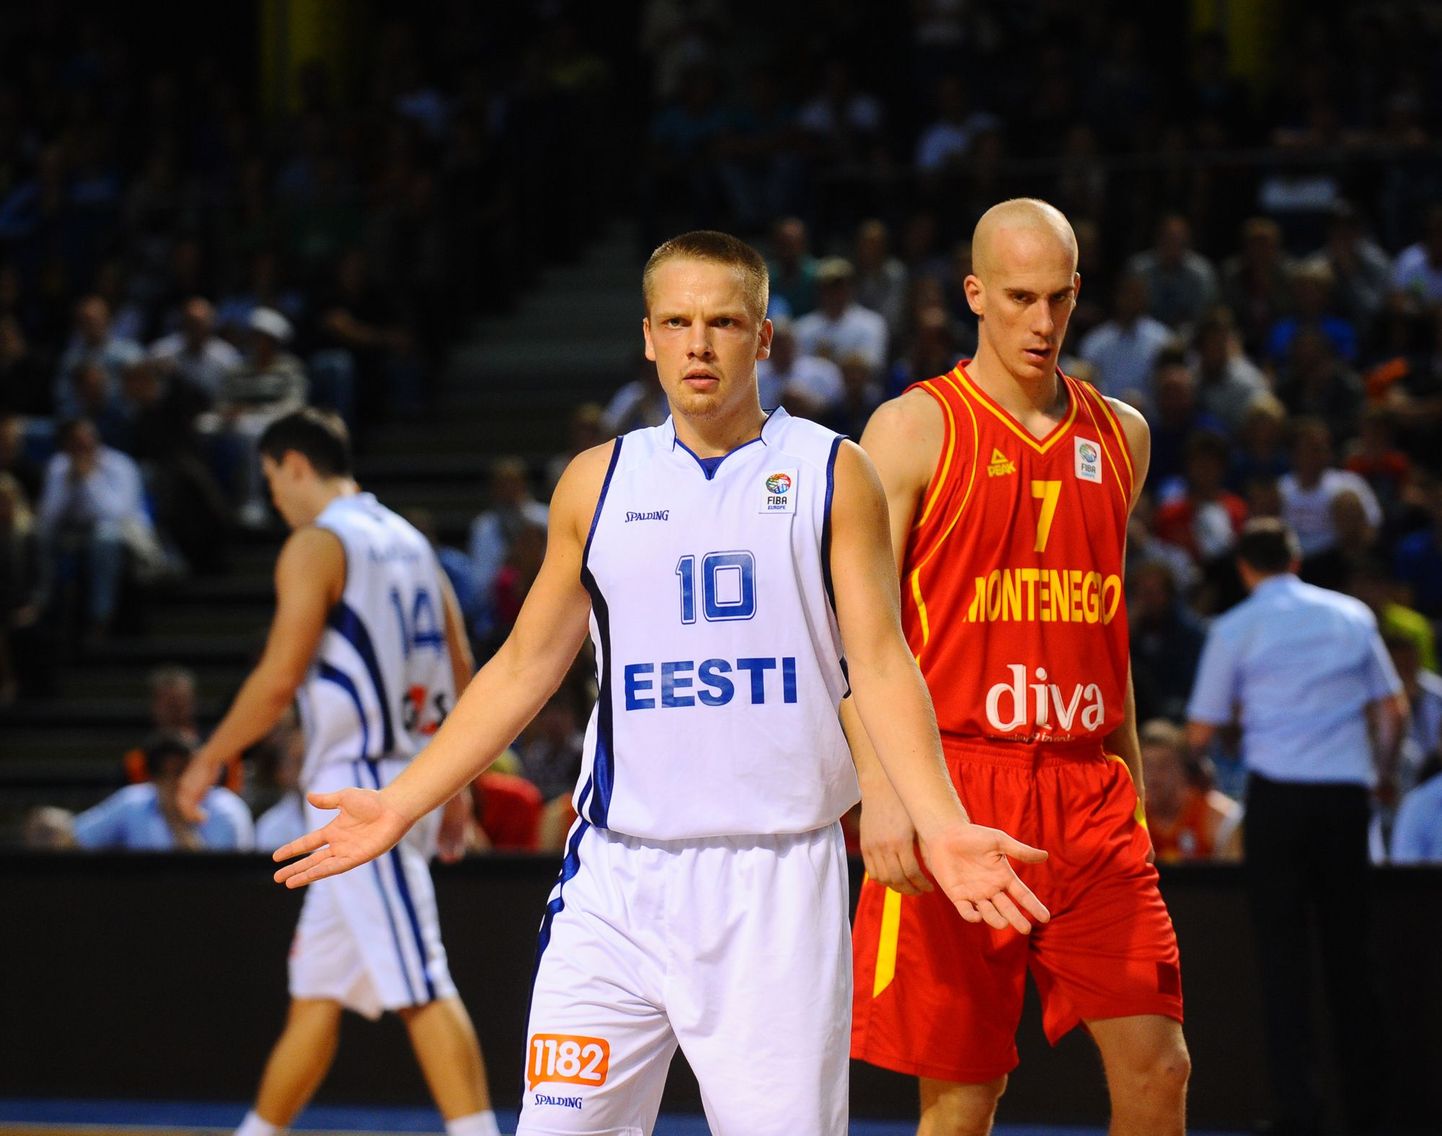 Eesti korvpallikoondis sai EM-valikturniiril esimese kaotuse, kui kodusaalis tunnistati Montenegro 64:77 paremust. Eesti koondise parimana tõi Gert Dorbek 16 punkti. Janar Talts ja Siim-Sander Vene lisasid 11 silma.